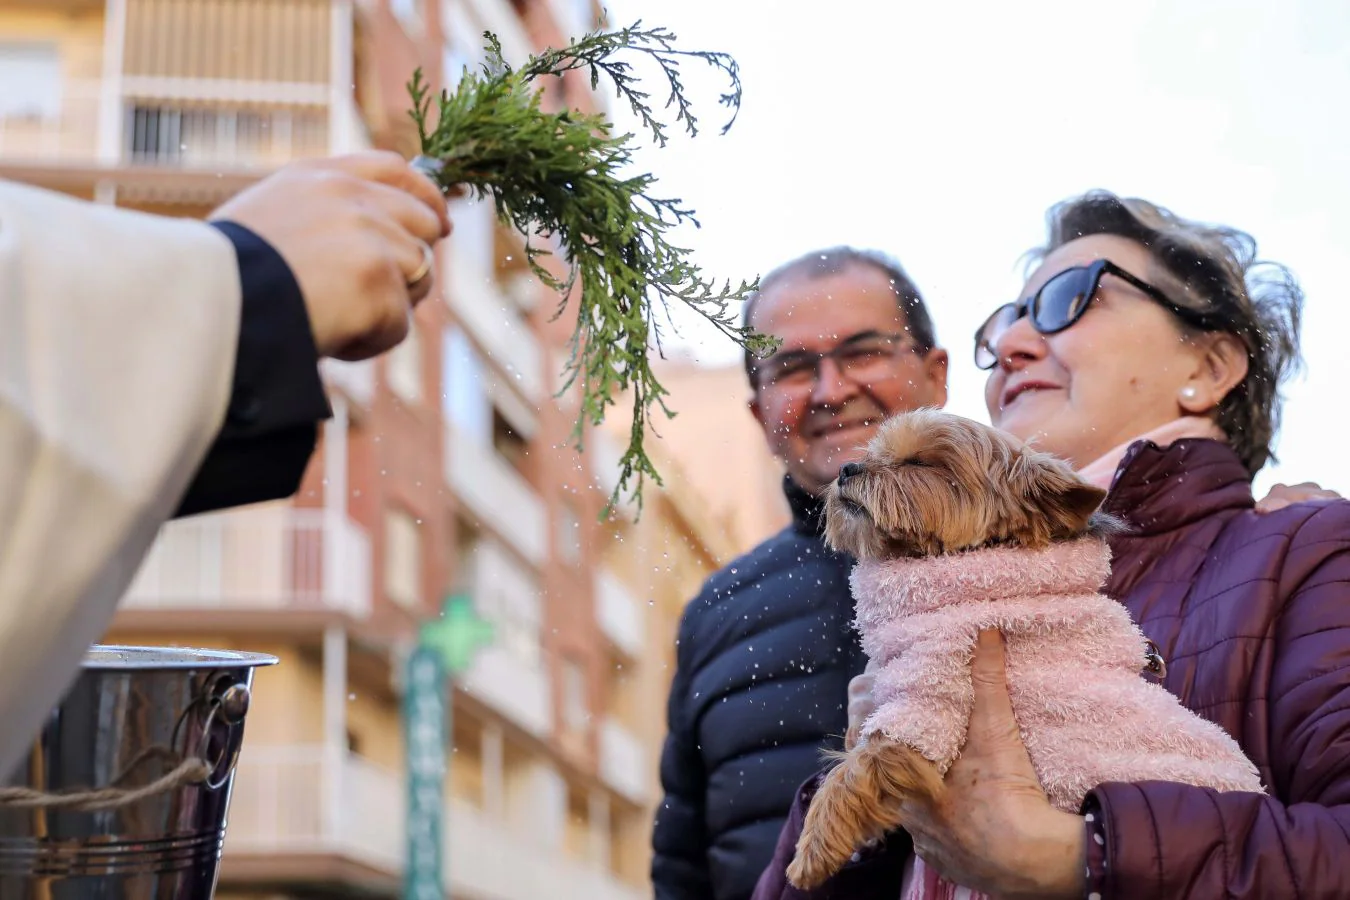 Perros, gatos, ratones... y hasta un búho han recibido la bendición de San Antón. patrón de los animales, en la madrileña parroquia de San Antón